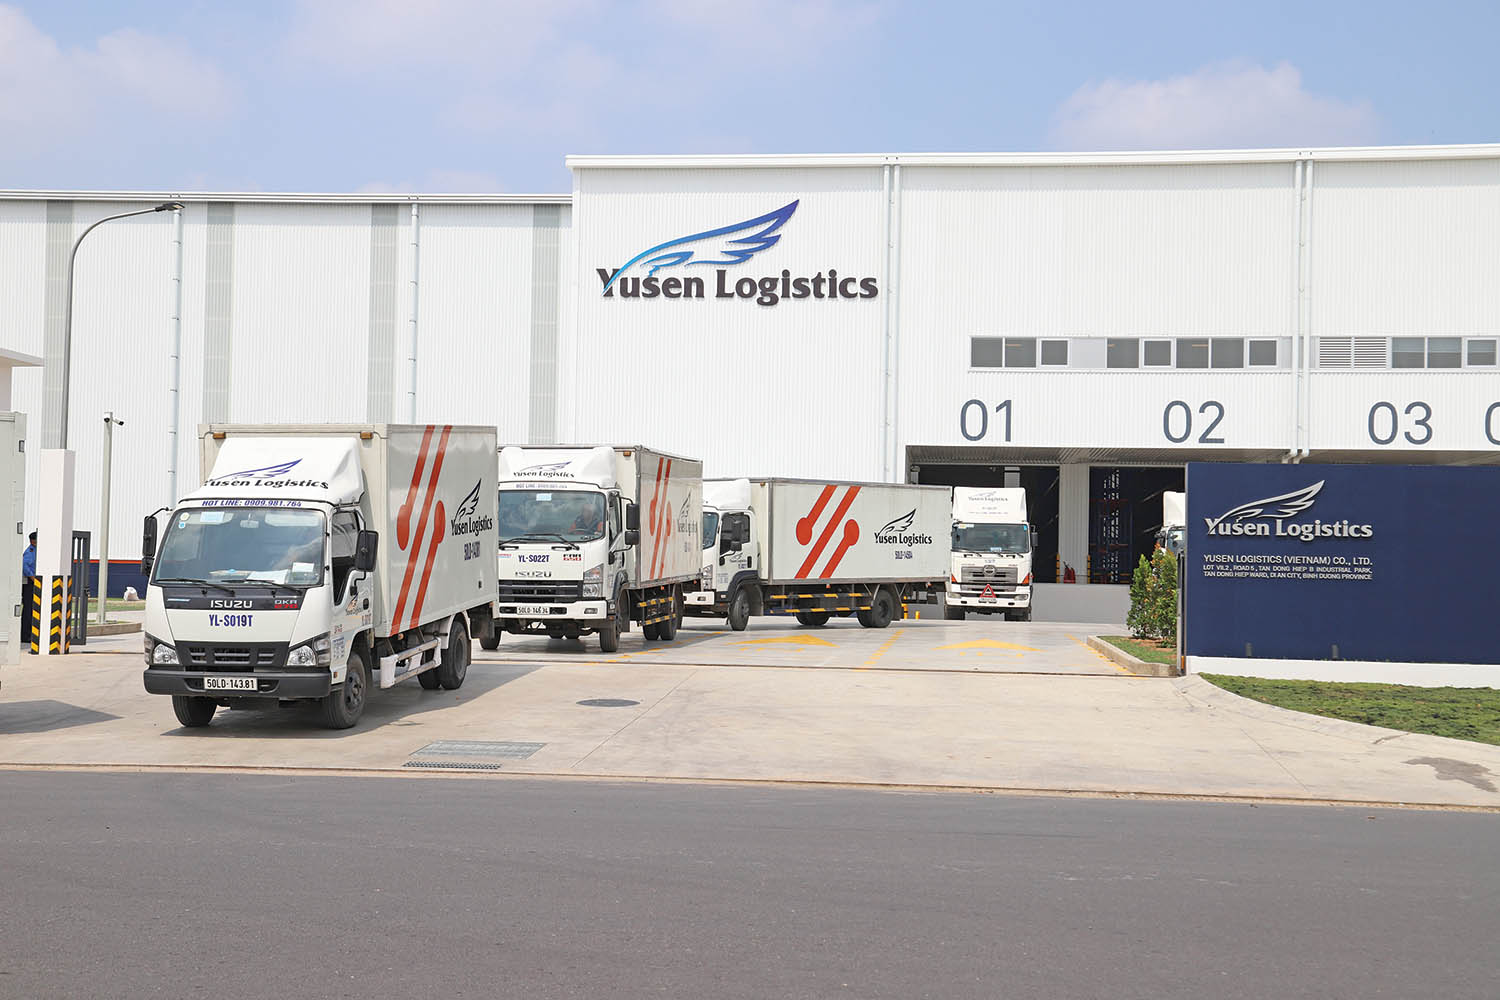 Trung tâm tiếp vận mới của Yusen Logistics vừa đi vào hoạt động 	ảnh: lê toàn